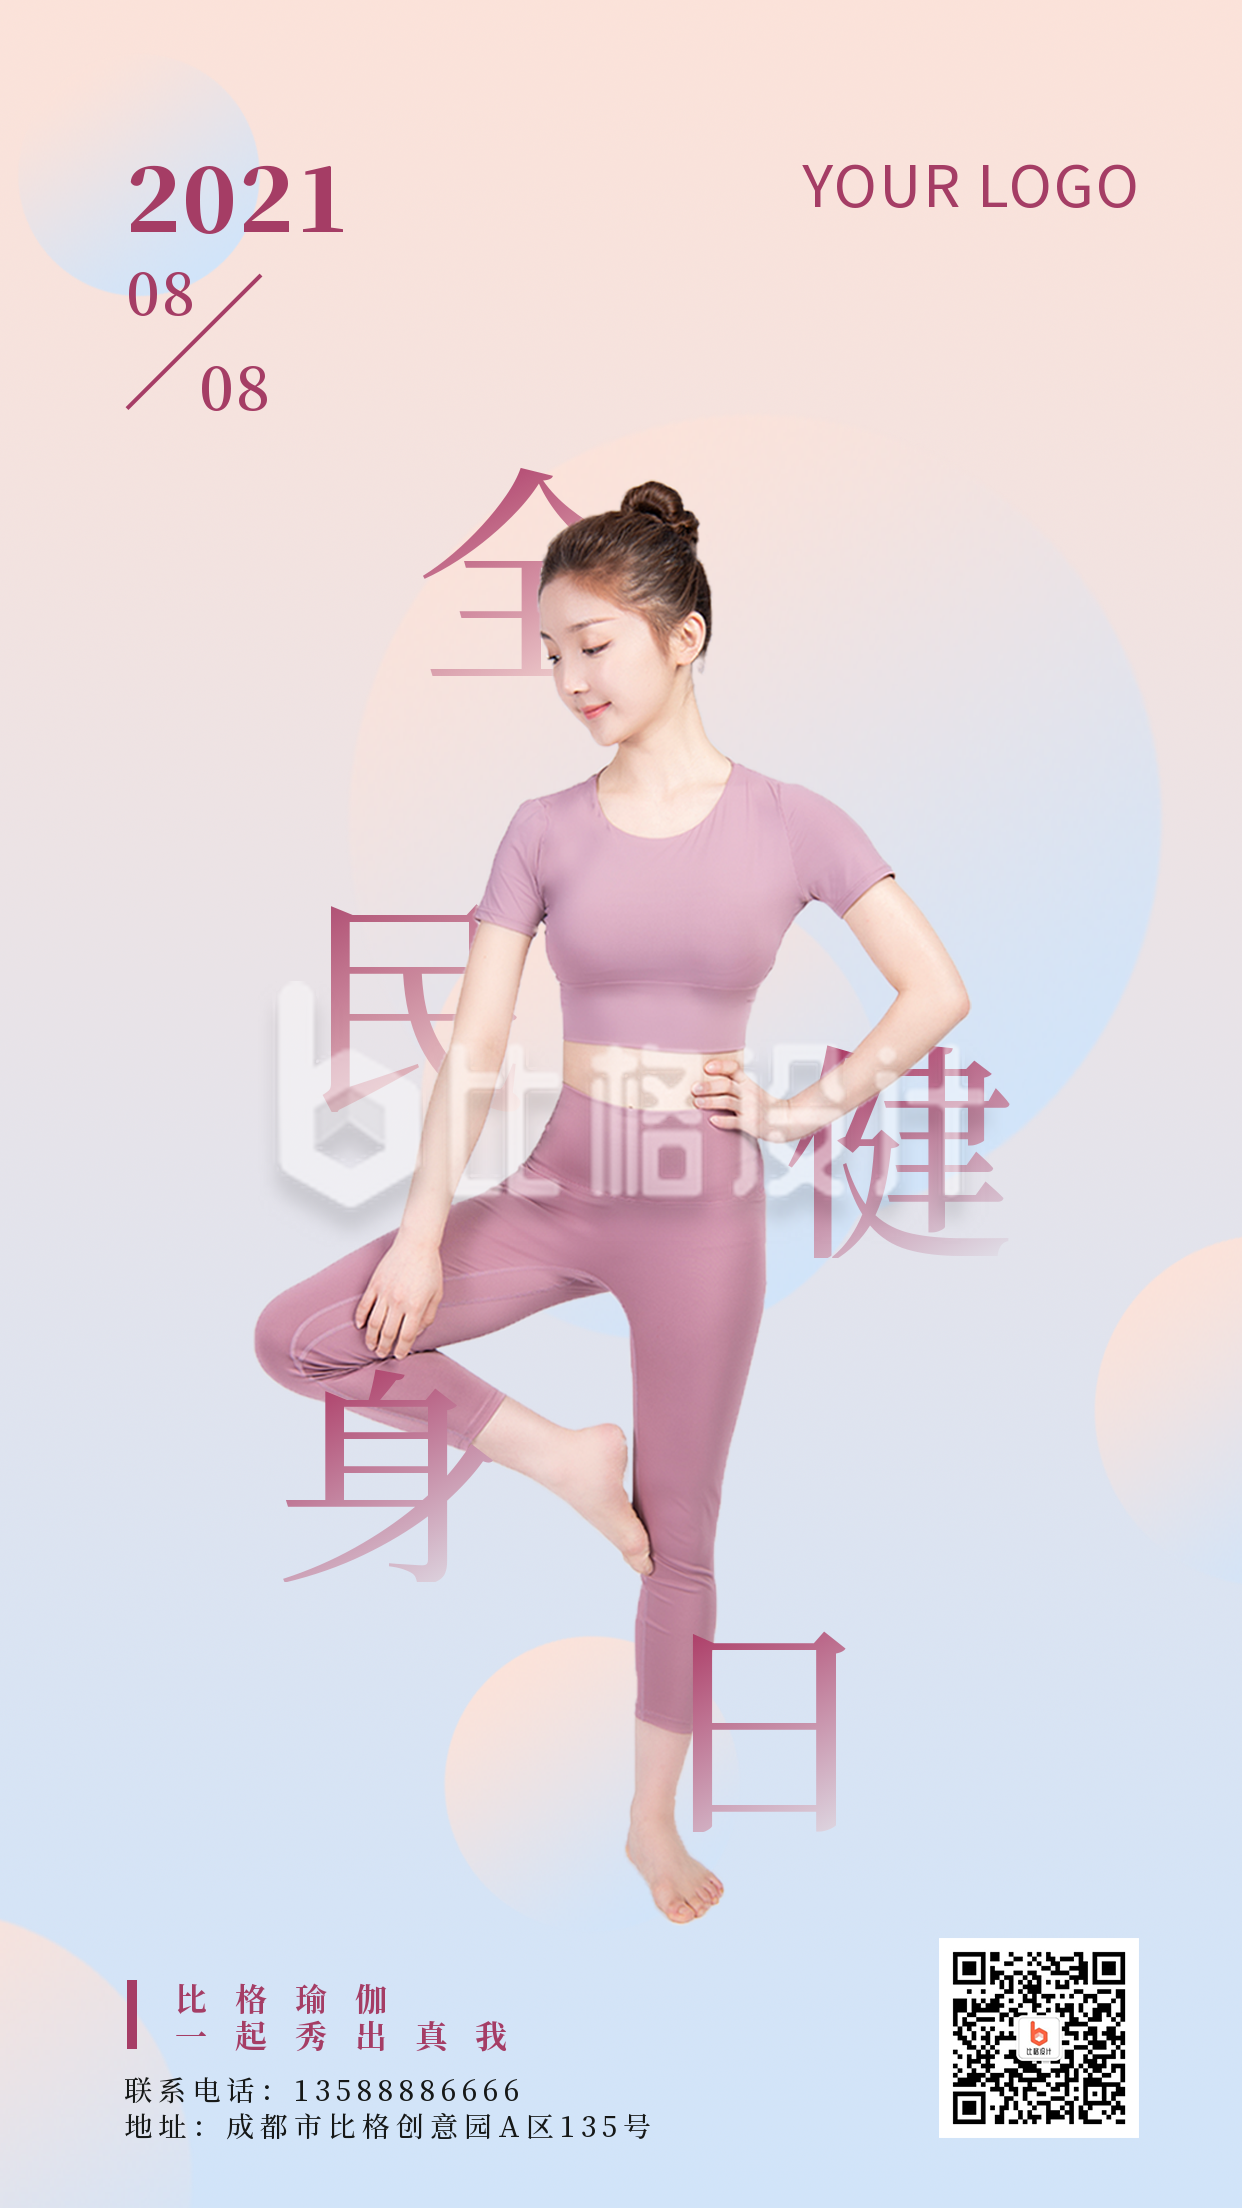 全民健身日瑜伽人物粉色渐变手机海报